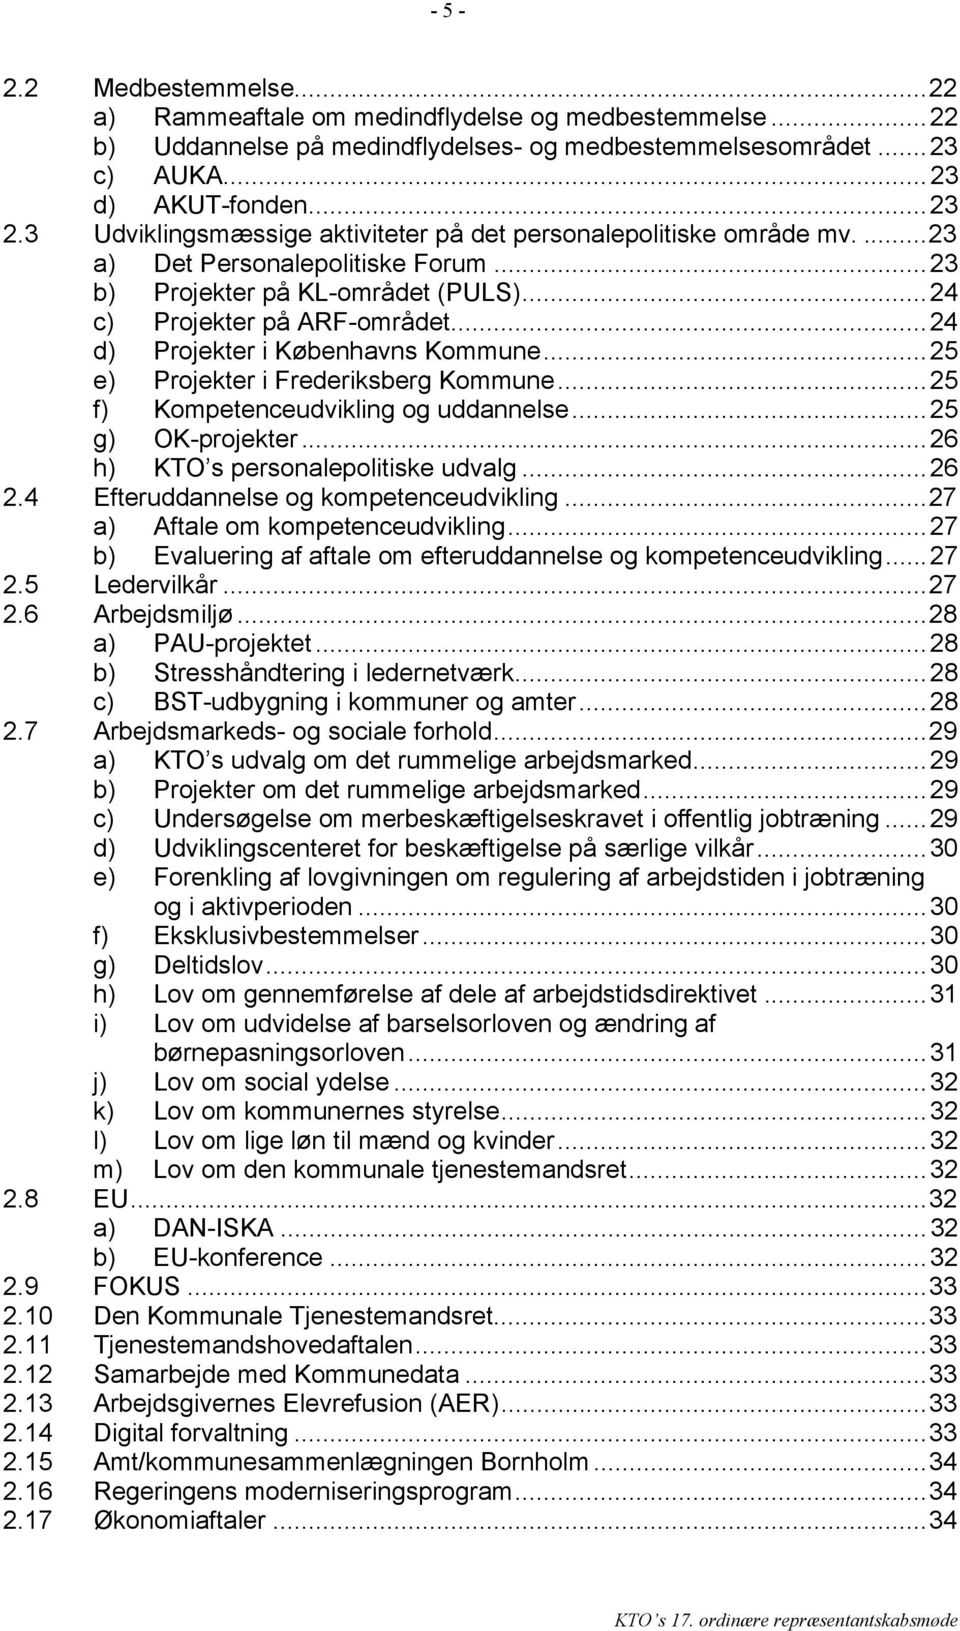 ..24 d) Projekter i Københavns Kommune...25 e) Projekter i Frederiksberg Kommune...25 f) Kompetenceudvikling og uddannelse...25 g) OK-projekter...26 h) KTO s personalepolitiske udvalg...26 2.